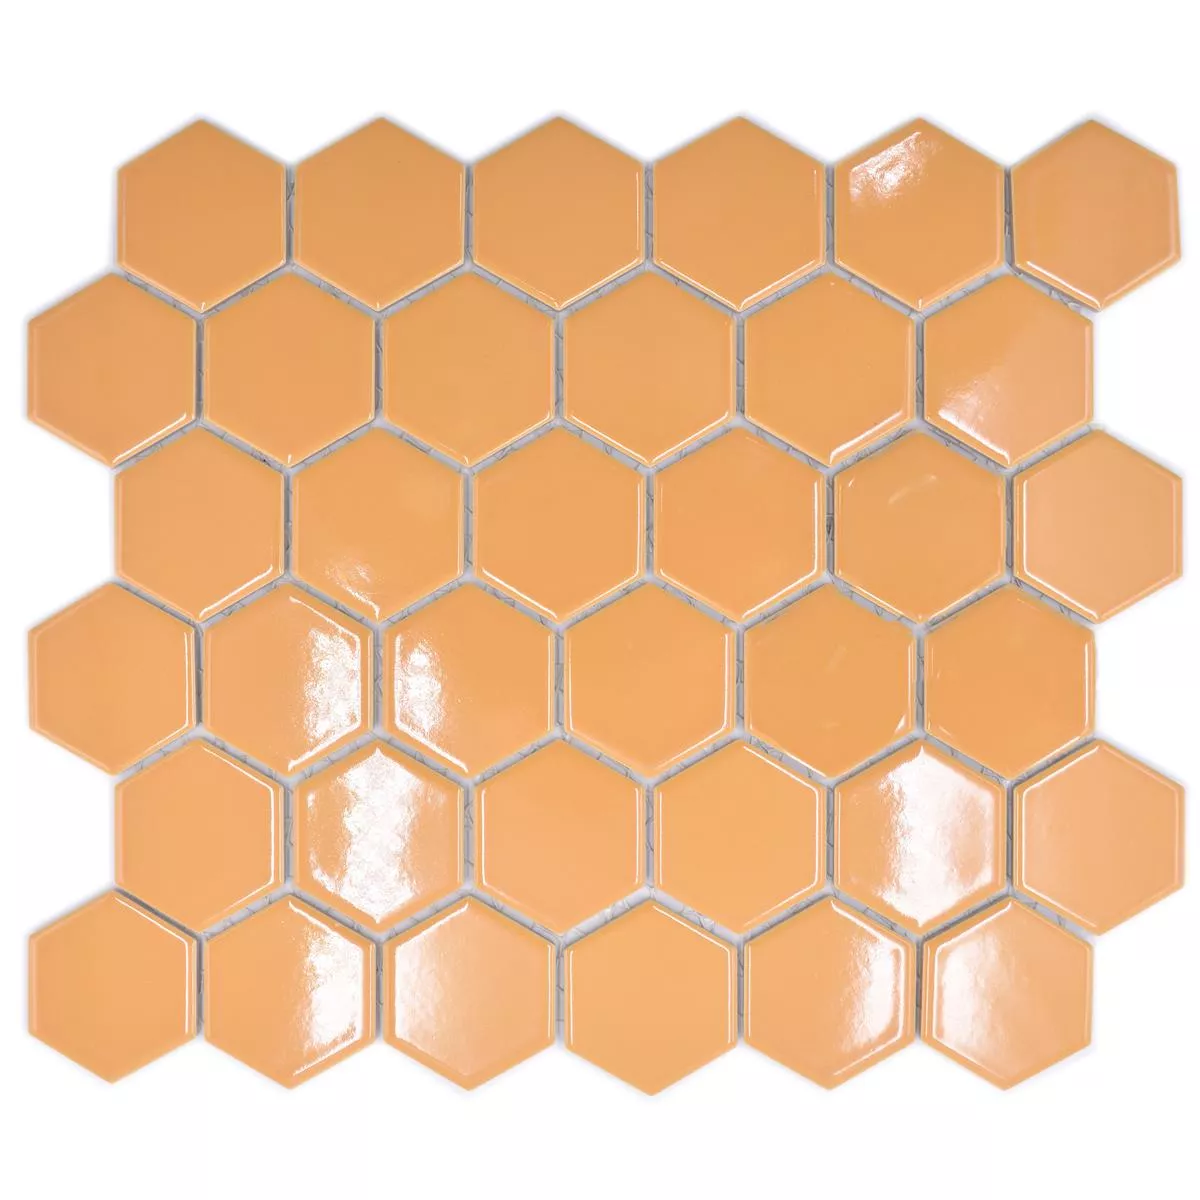 Muestra de Mosaico Cerámico Salomon Hexagonales Ocre Naranja H51